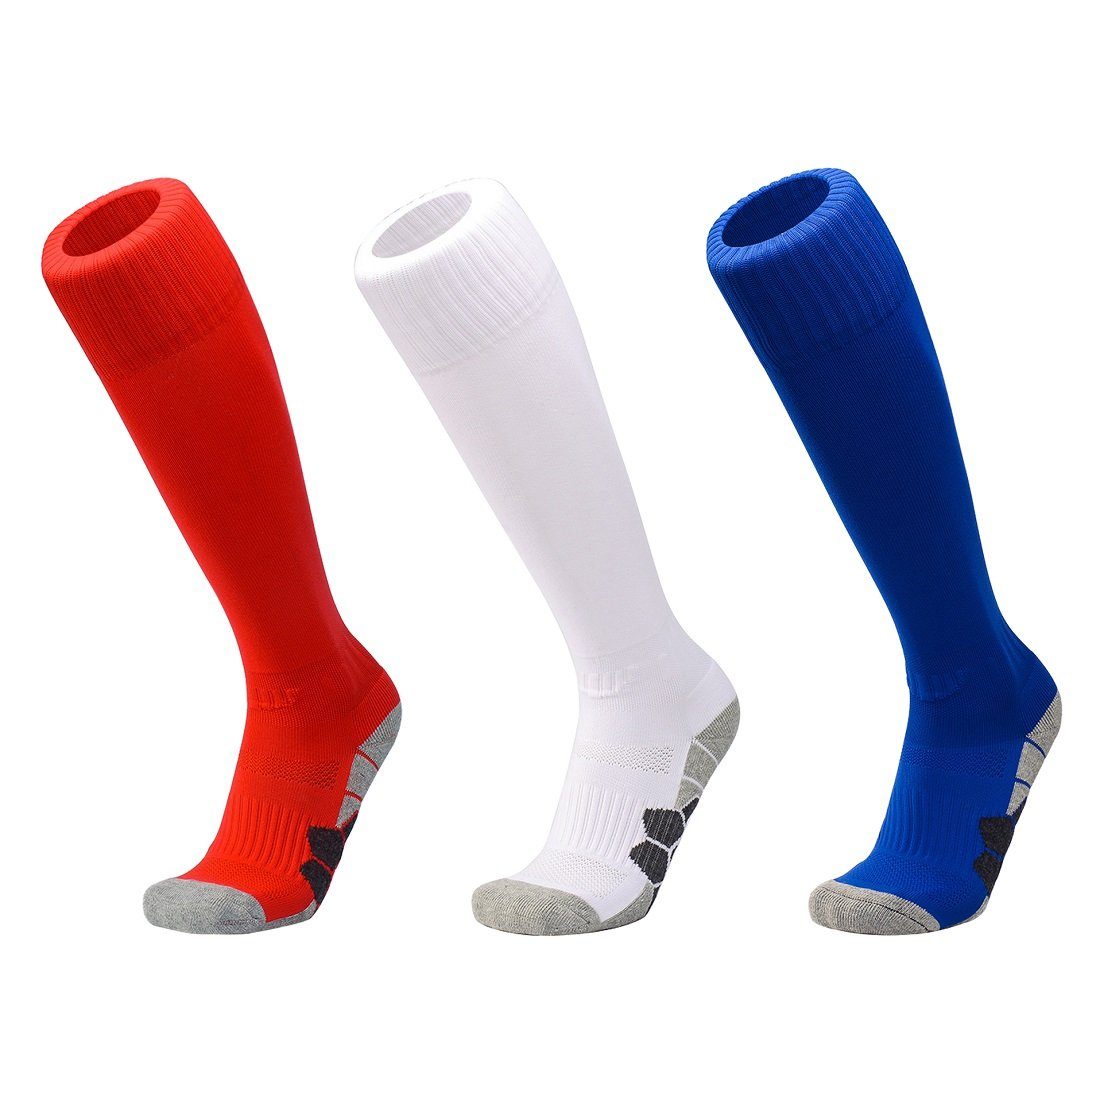 3 Stutzenstrümpfe Sportsocken Atmungsaktiv Unisex Paare - Lang Rot/Weiß/Blau Fußballsocken DEBAIJIA Knie Fußball